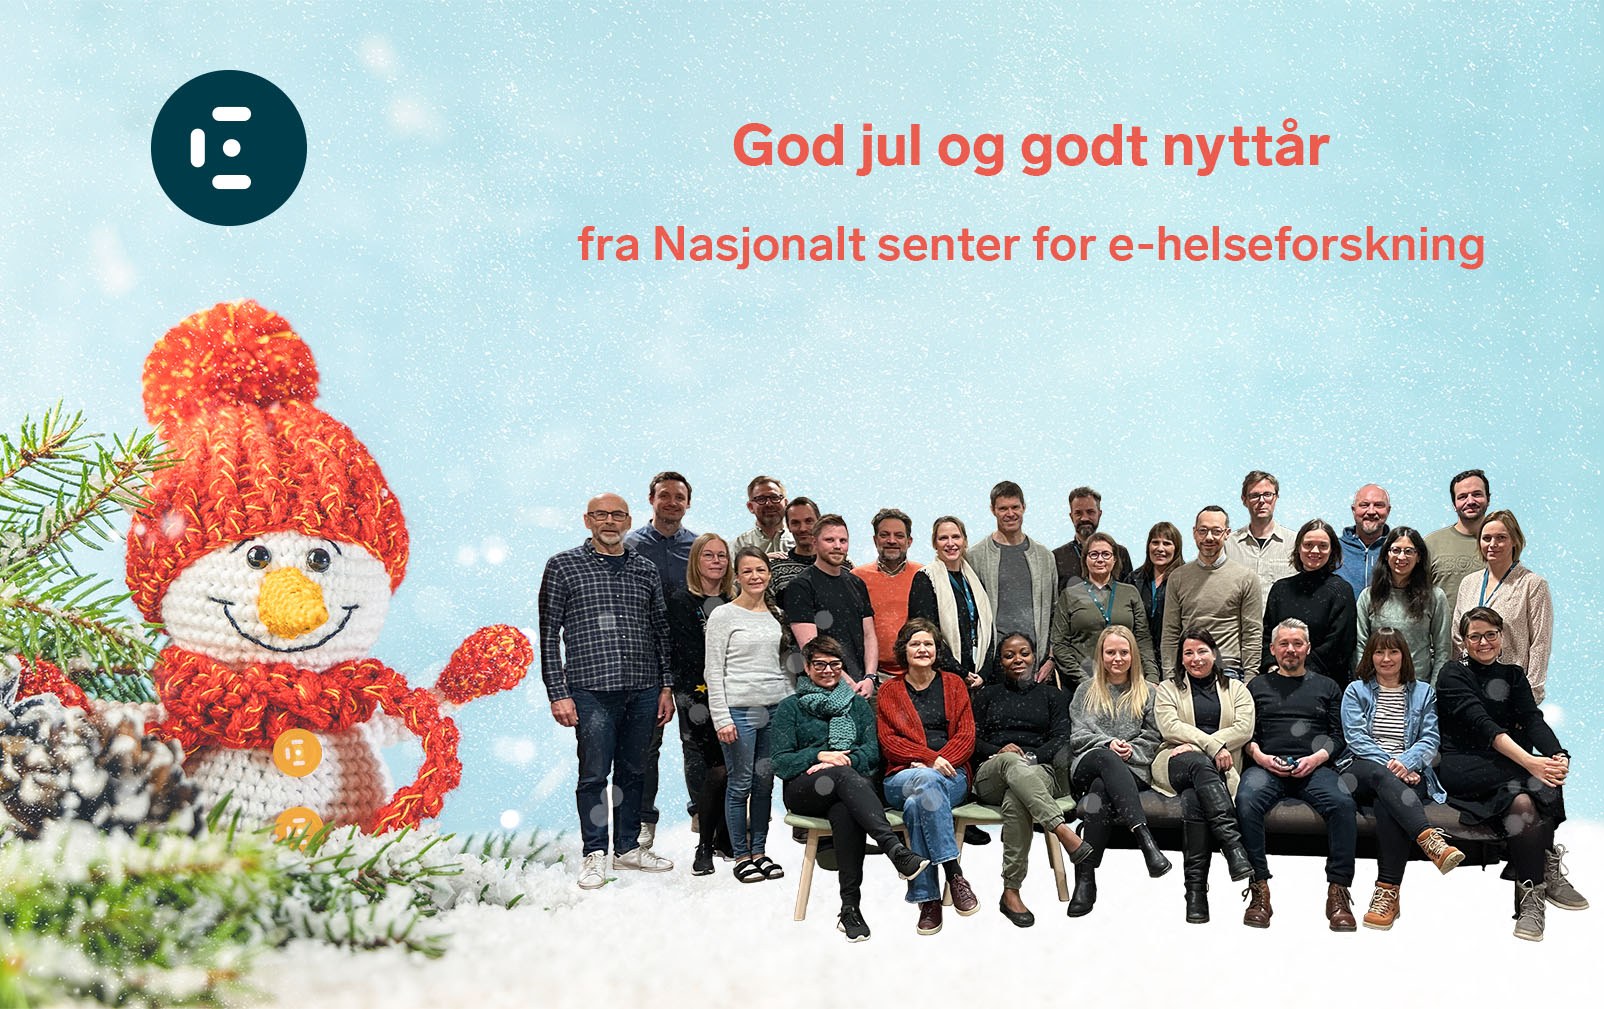 Gruppebilde av ansatte, en heklet snømann og teksten god jul og godt nyttår fra Nasjonalt senter for e-helseforskning.